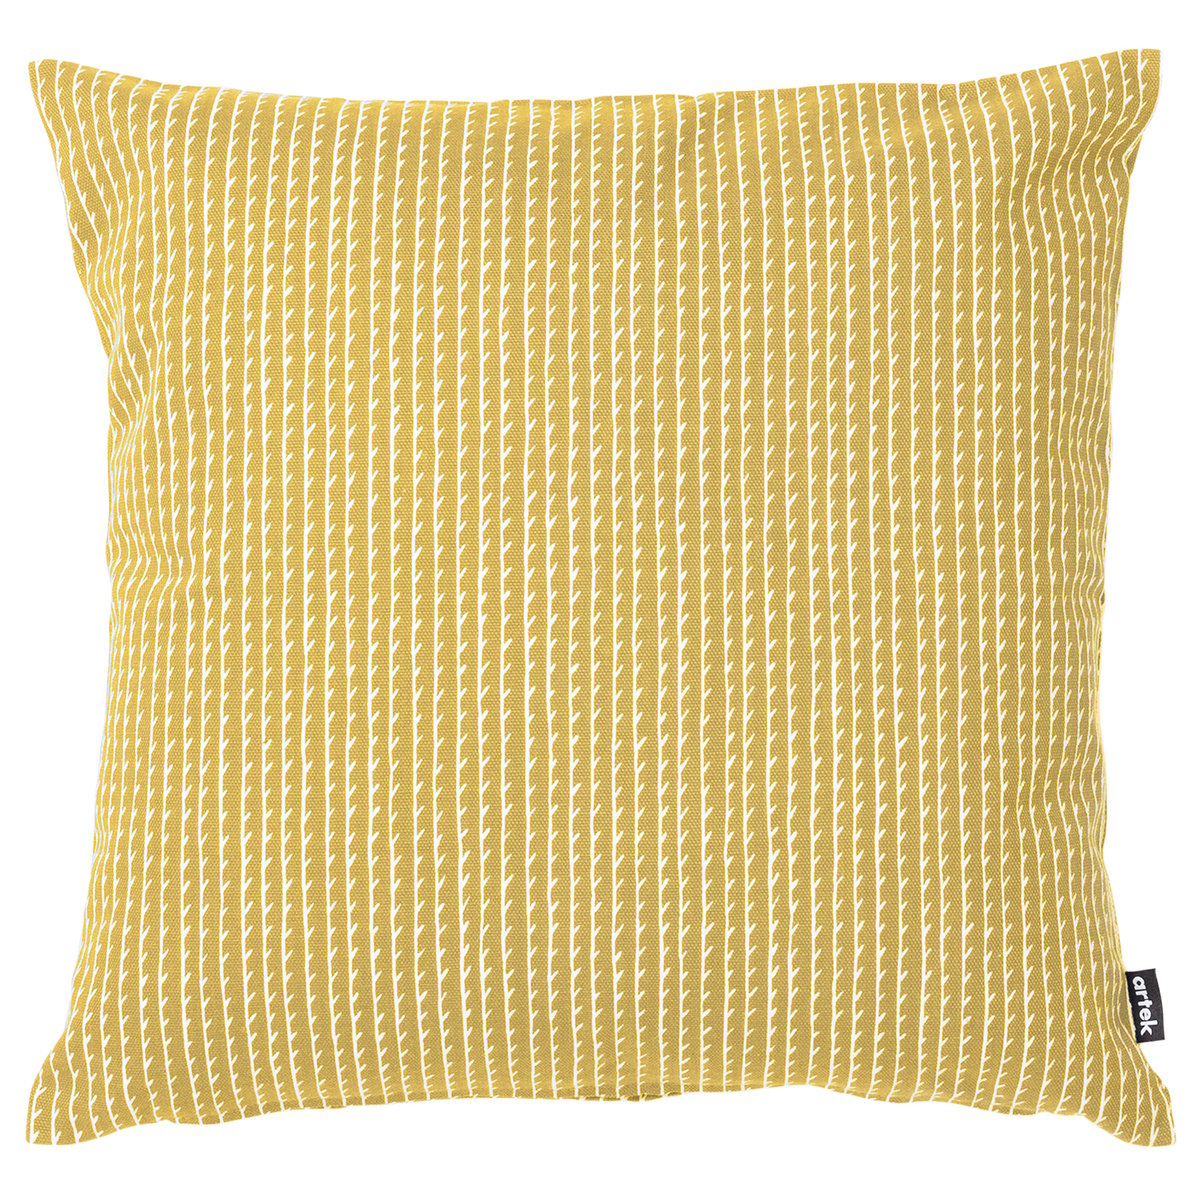 Rivi cushion cover, 50 x 50 cm, canvas, mustard - white